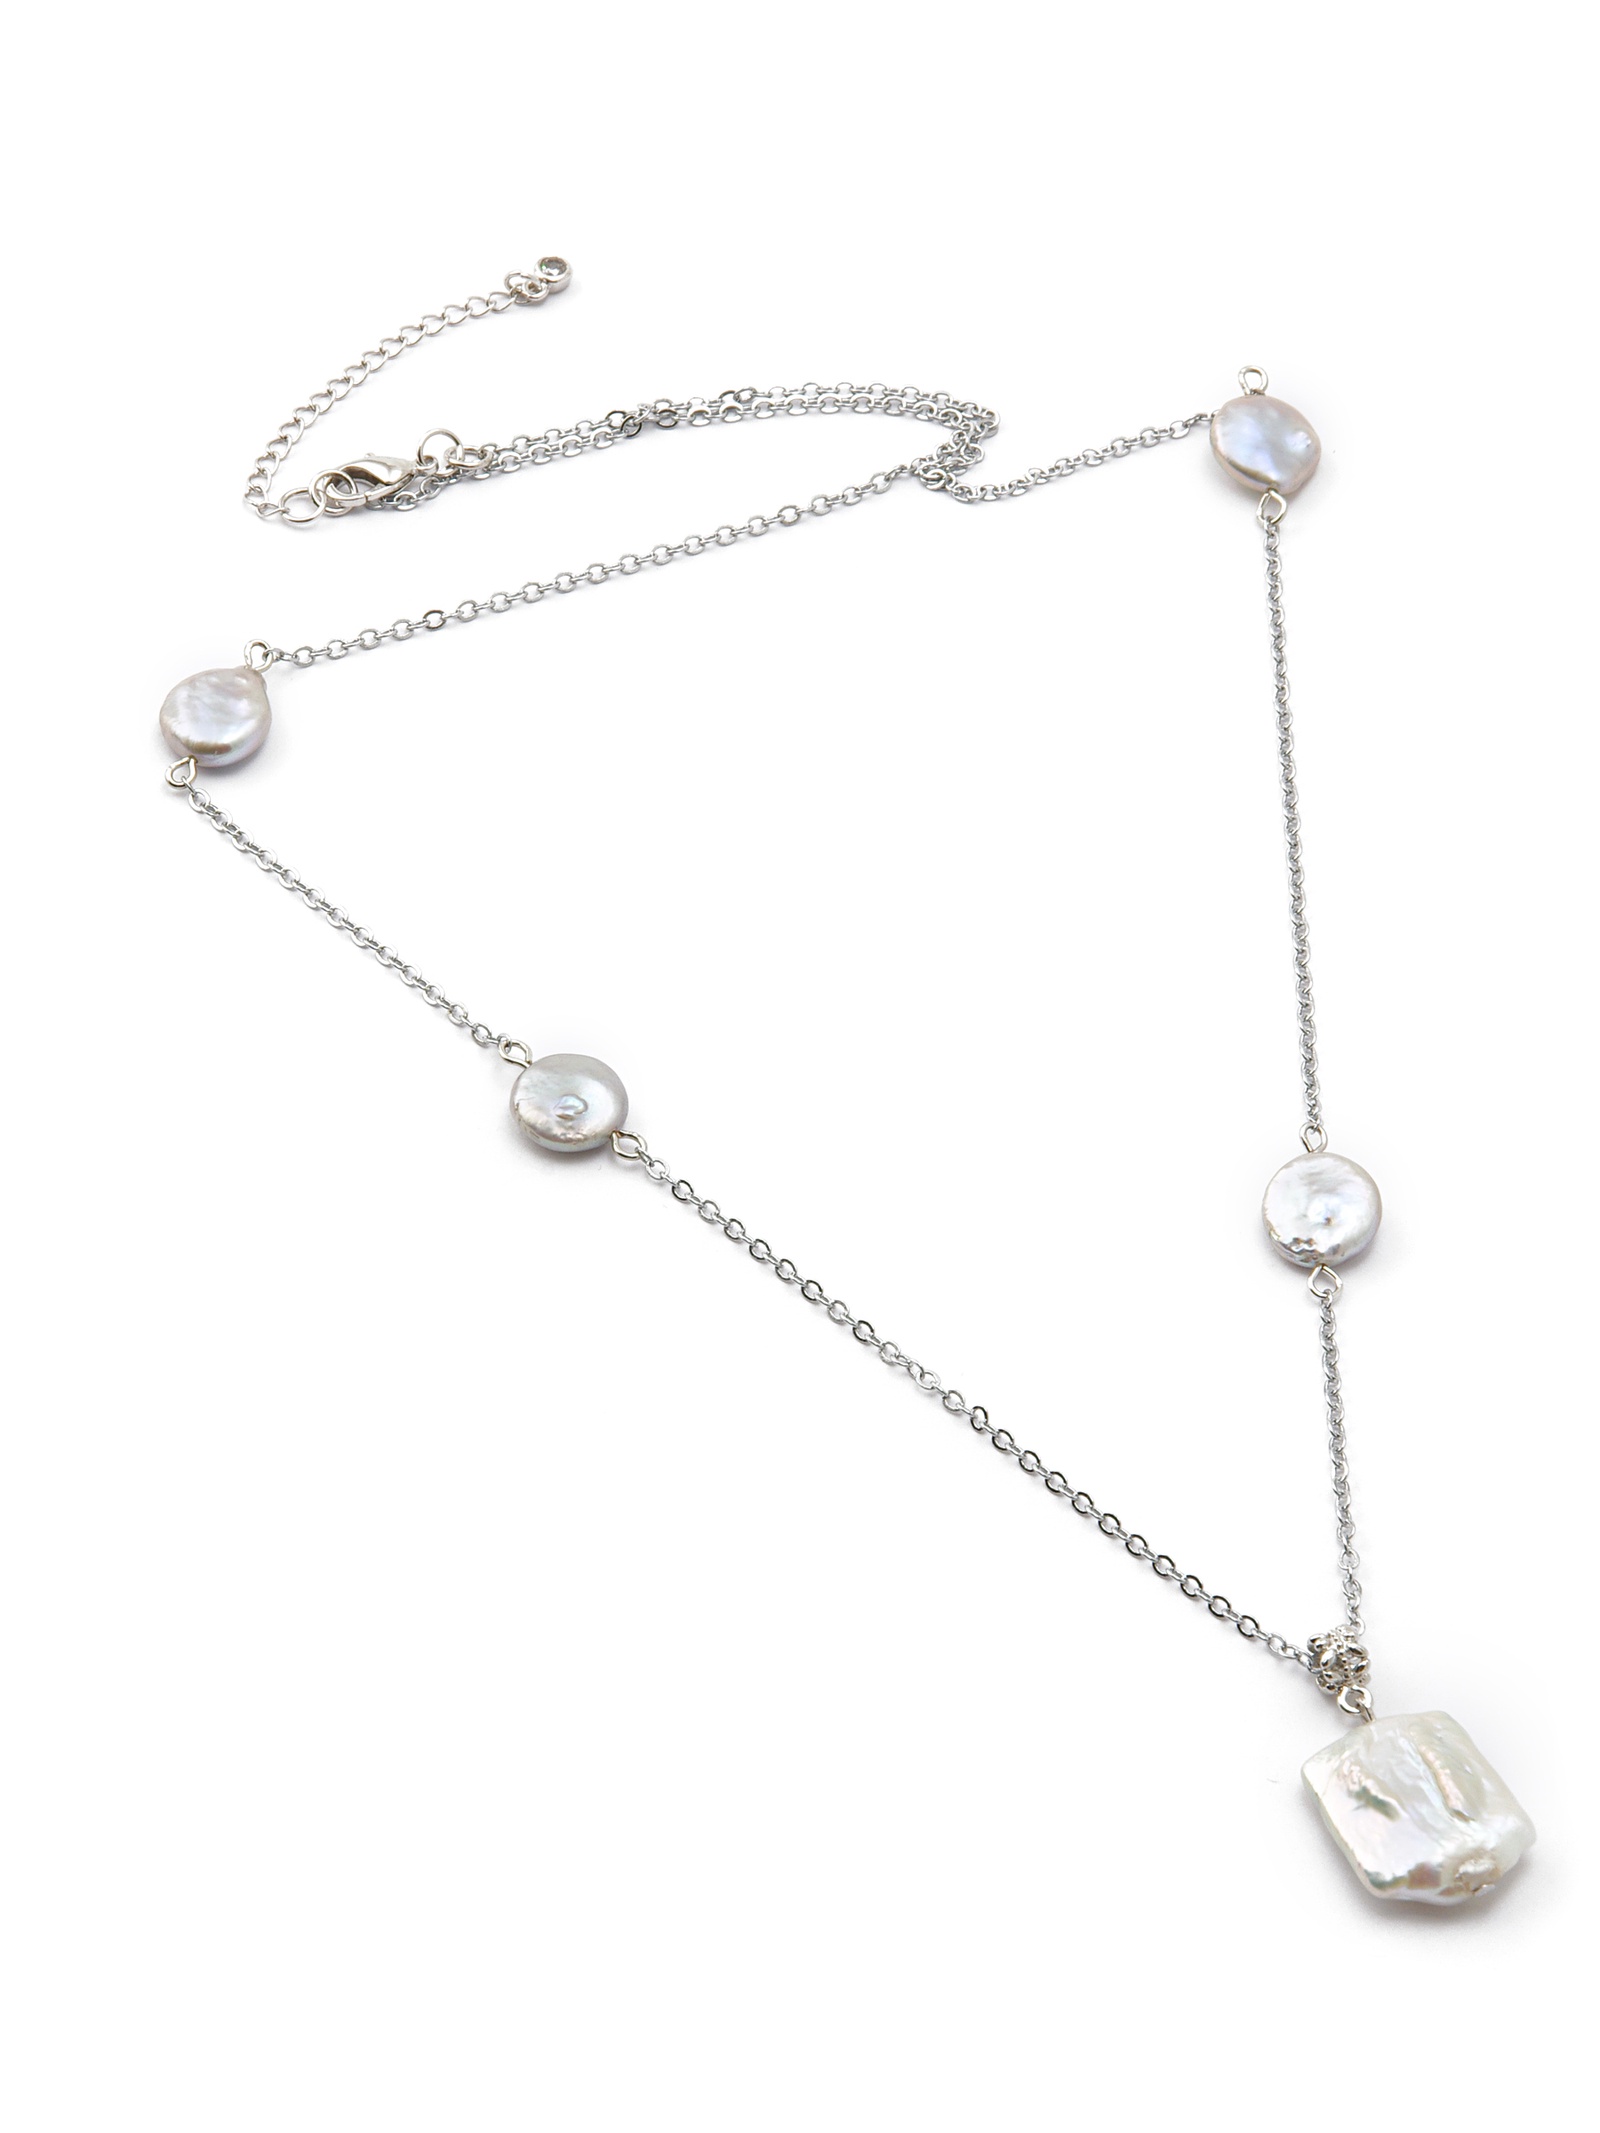 фото Колье/ожерелье бижутерное ЖемАрт 229-55, Жемчуг, Бижутерный сплав, белый, серебристый